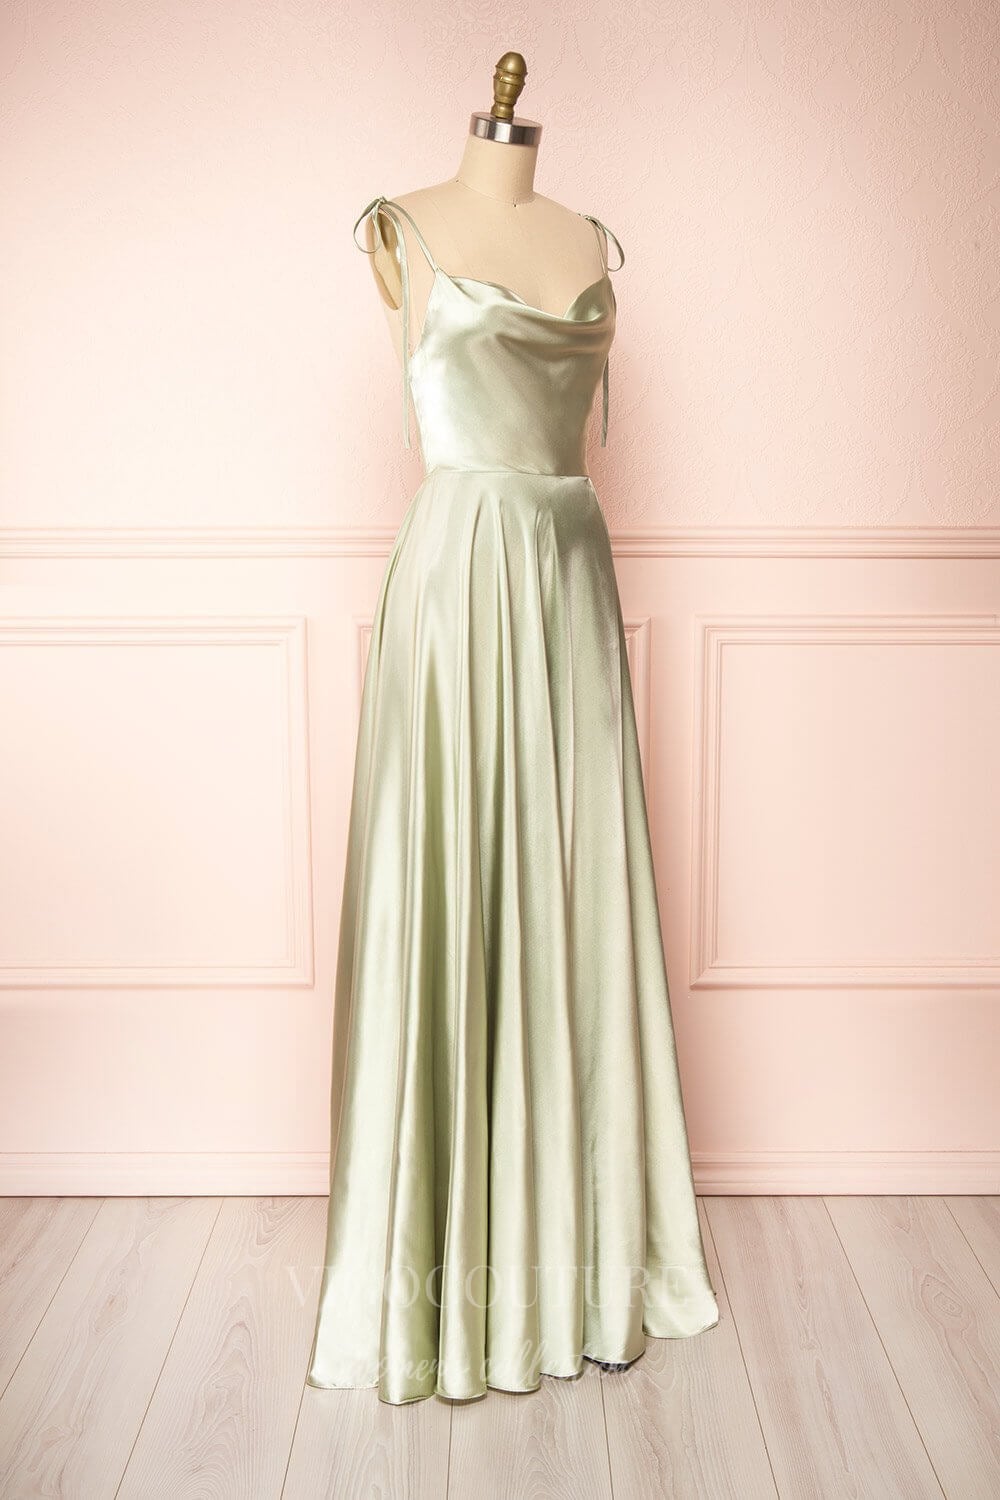 vigocouture-Blue Spaghetti Strap Prom Dress 20579-Prom Dresses-vigocouture-